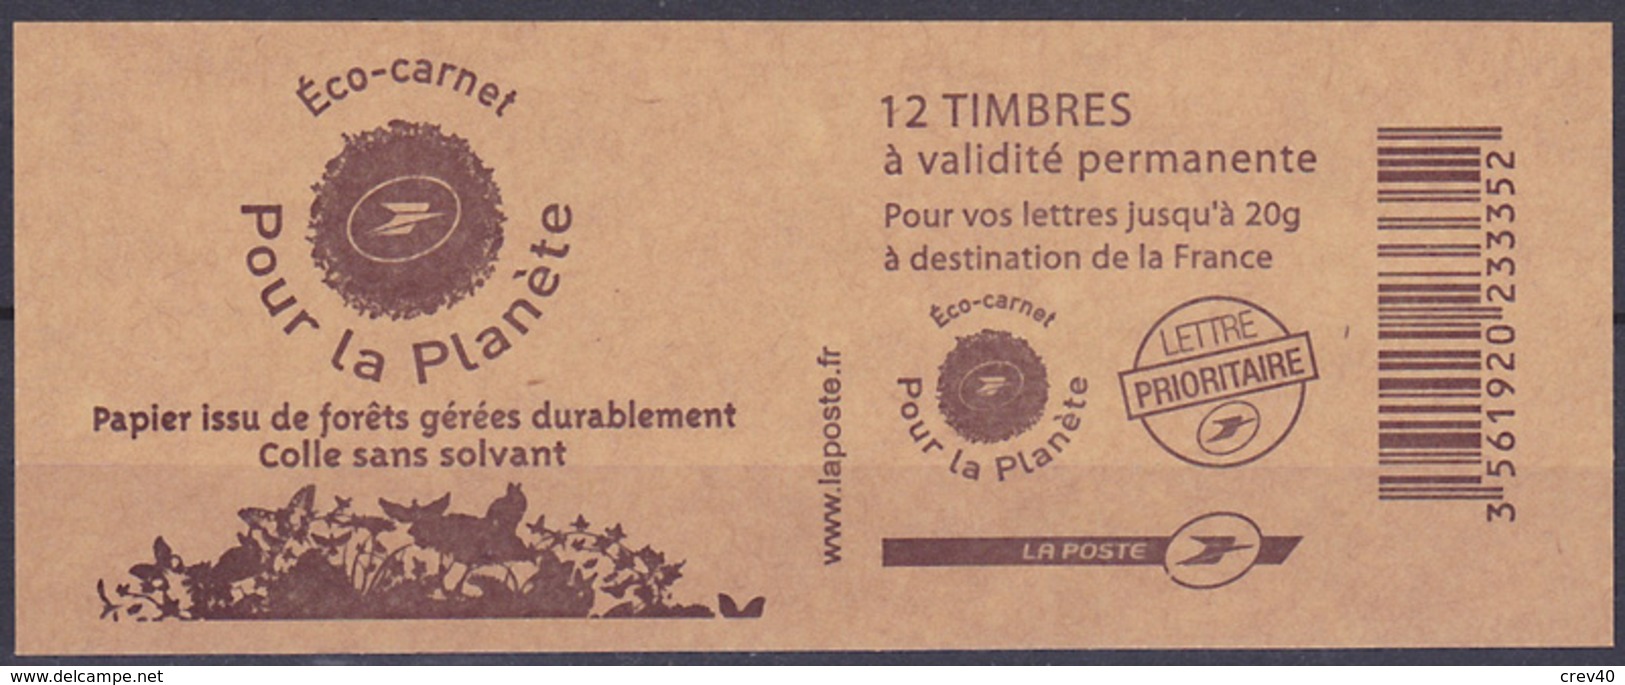 Carnet Neuf ** N° 3744b-C5(Yvert) France 2007 - Marianne De Lamouche, Eco-carnet Pour La Planète, Découpe En Biais - Modernes : 1959-...